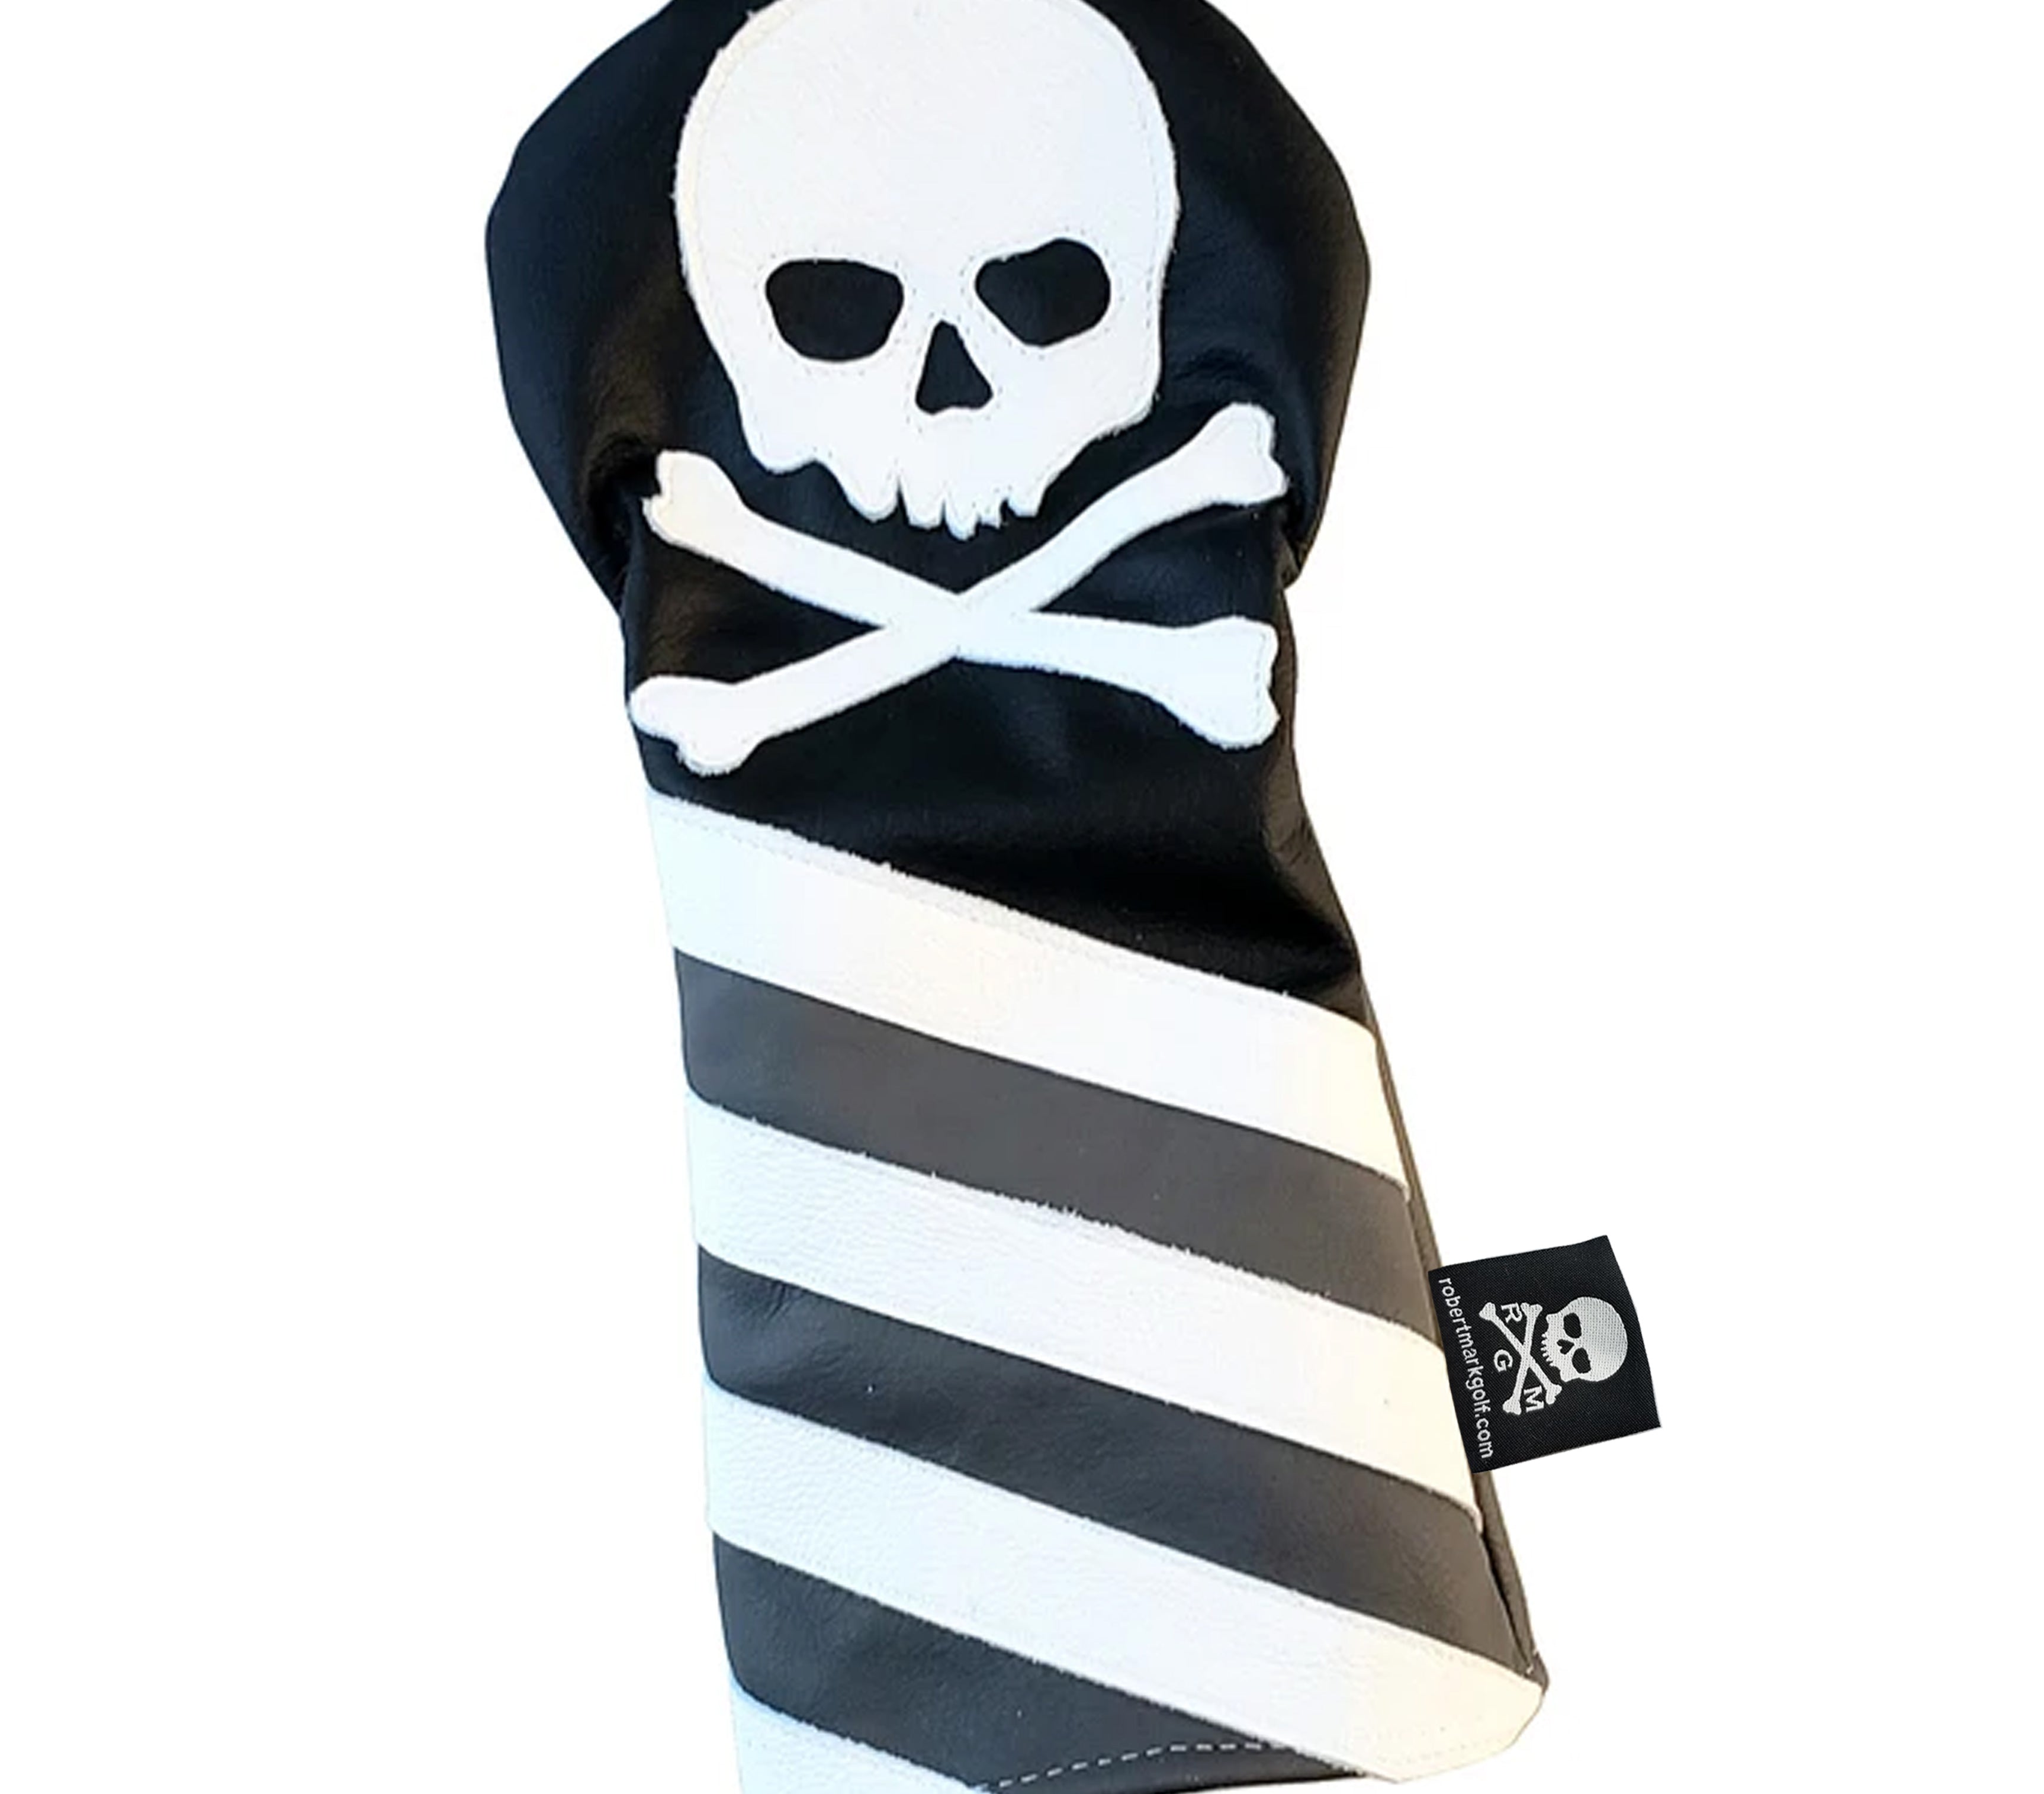 NEW! Monochromatic Skull & Bones USA Flag Headcover - Robert Mark Golf